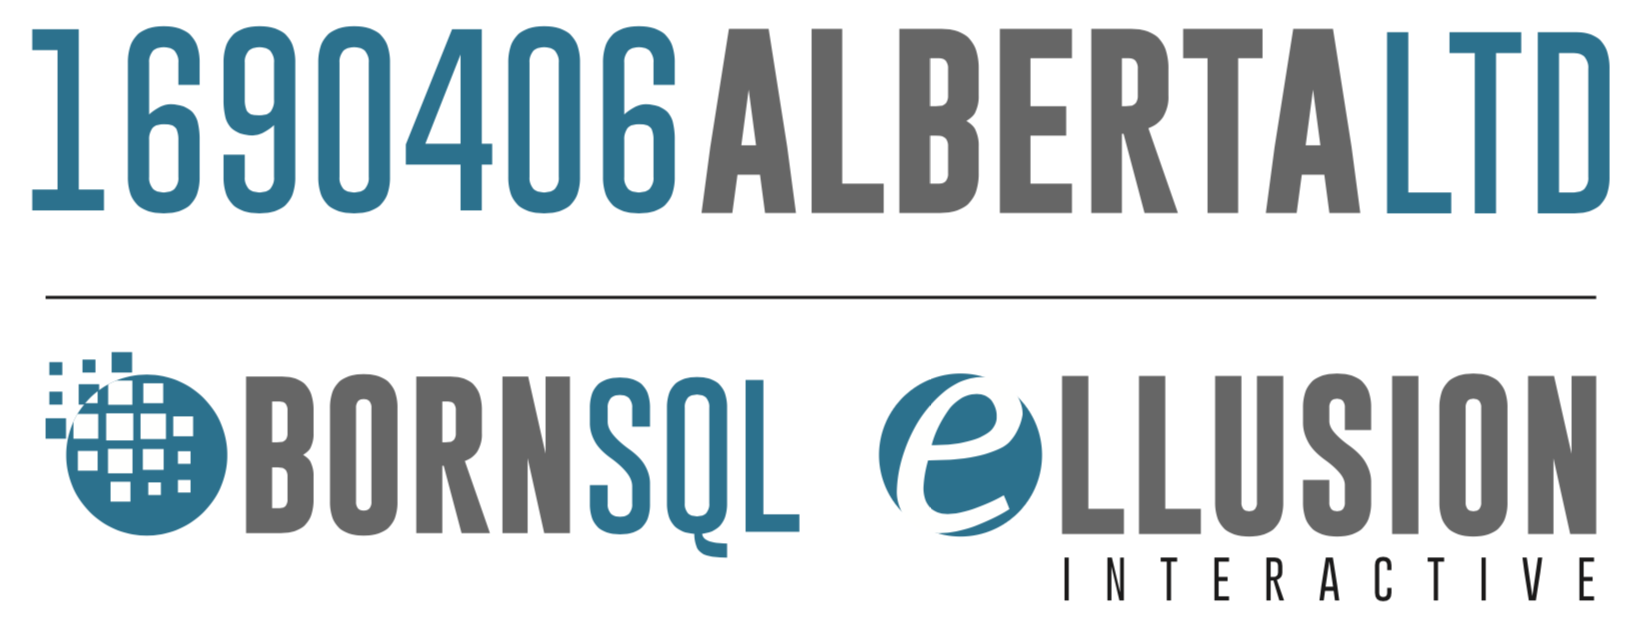 1690406 Alberta Ltd, Born SQL, E-llusion Interactive